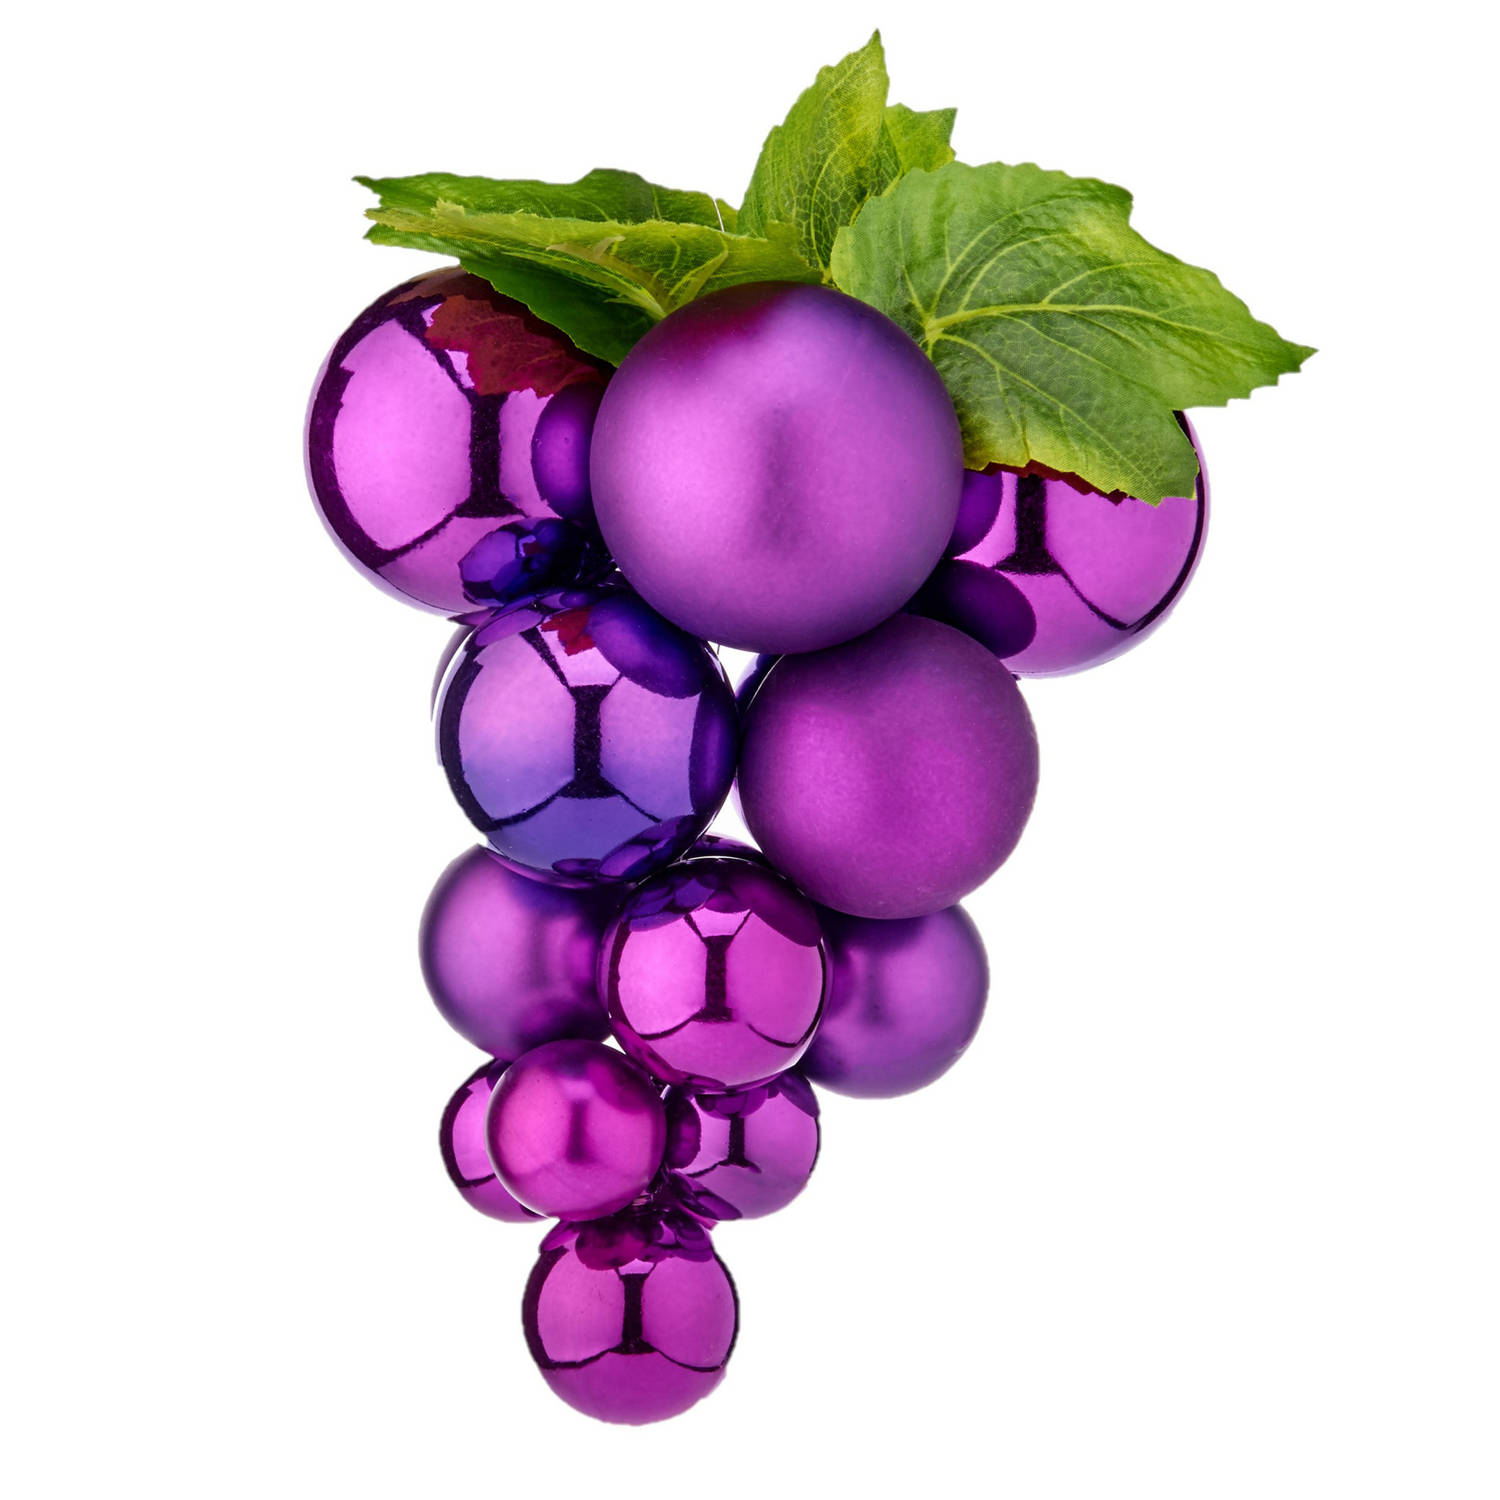 1x stuks decoratie druiventros paars van kunststof 20 cm - Namaakfruit/nepfruit voor wijn thema decoraties of kerstversiering